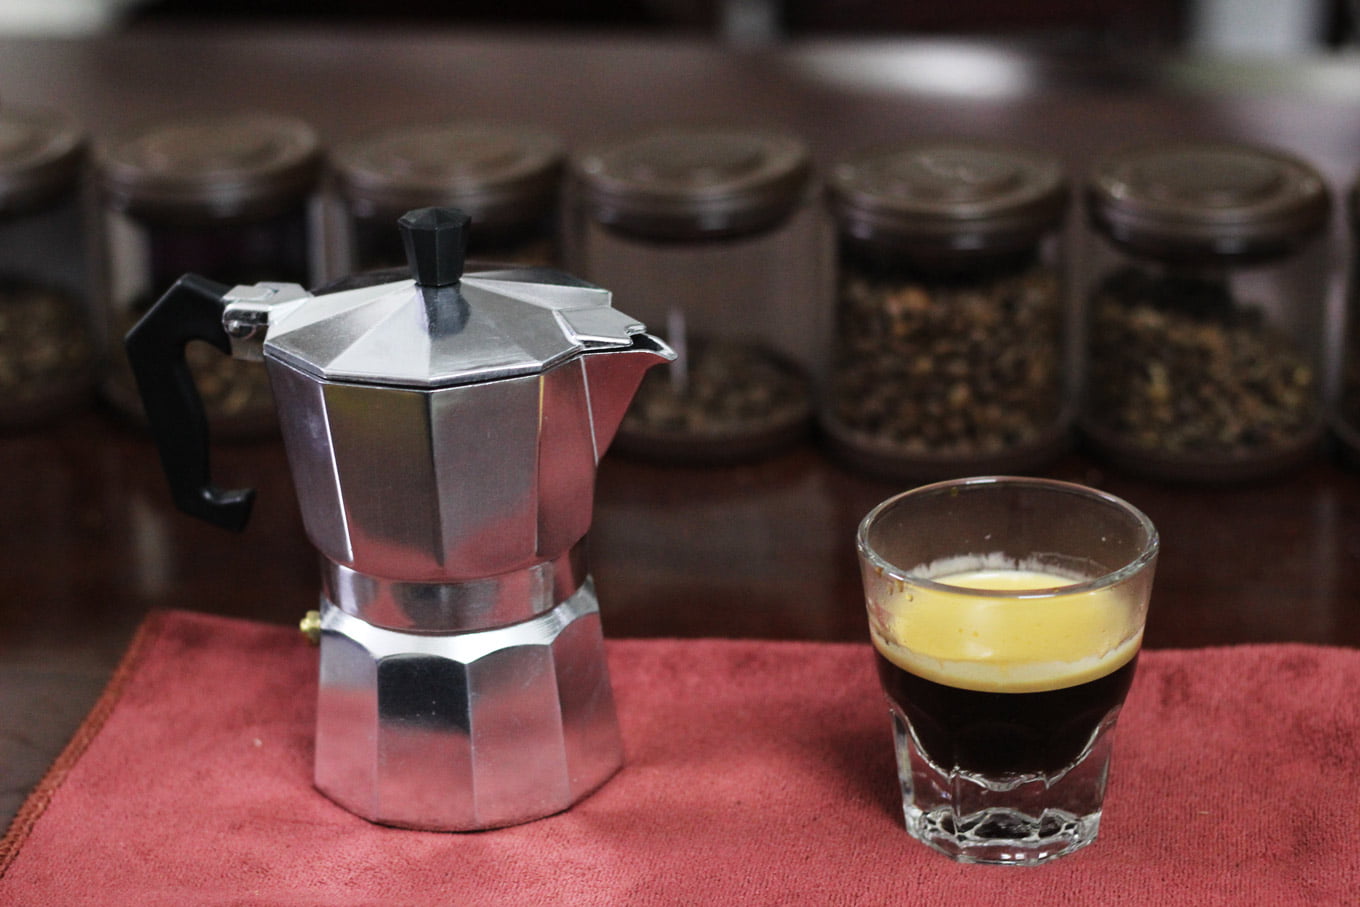 Гейзерная кофеварка как варить кофе на газу. Пенка кофе гейзерная кофеварка. Кофе с какао в гейзерной кофеварке. Гейзерное заваривание кофе. Как варить кофе в гейзерной кофеварке.